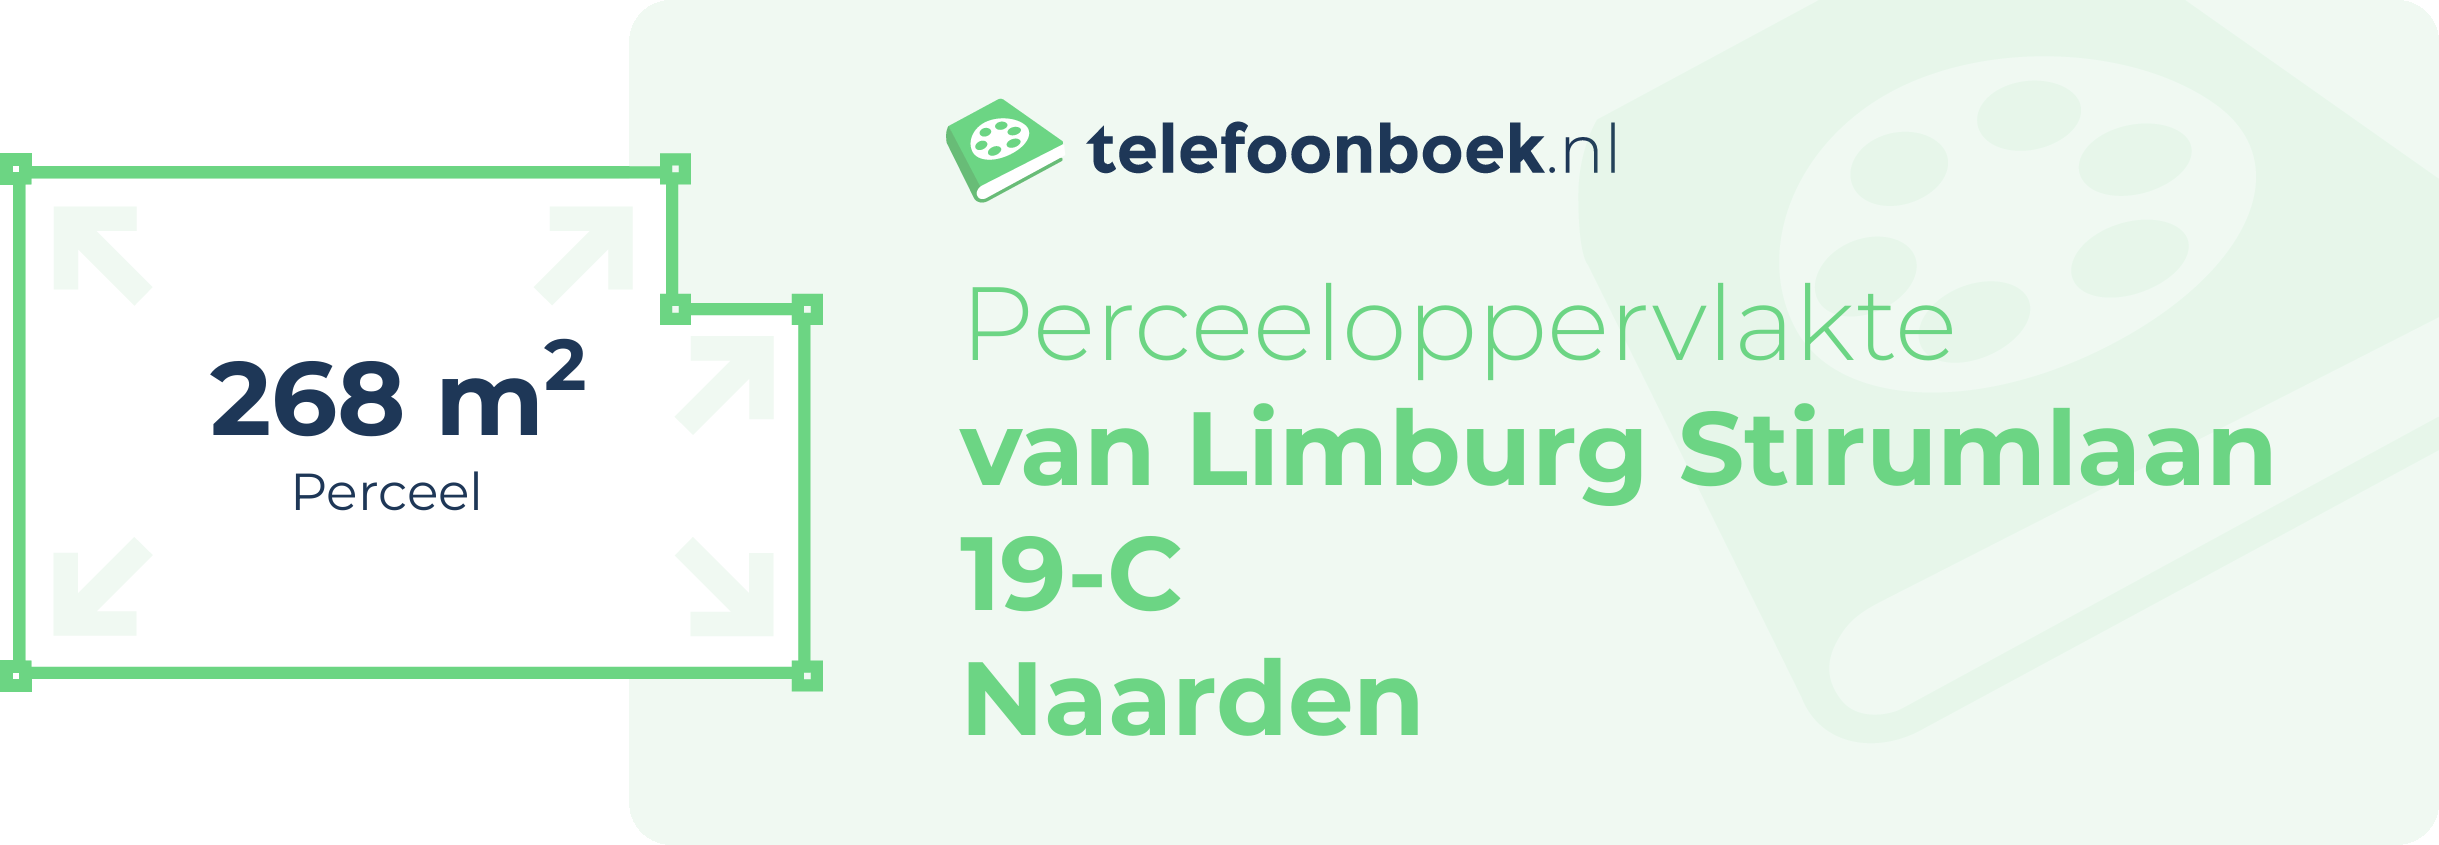 Perceeloppervlakte Van Limburg Stirumlaan 19-C Naarden